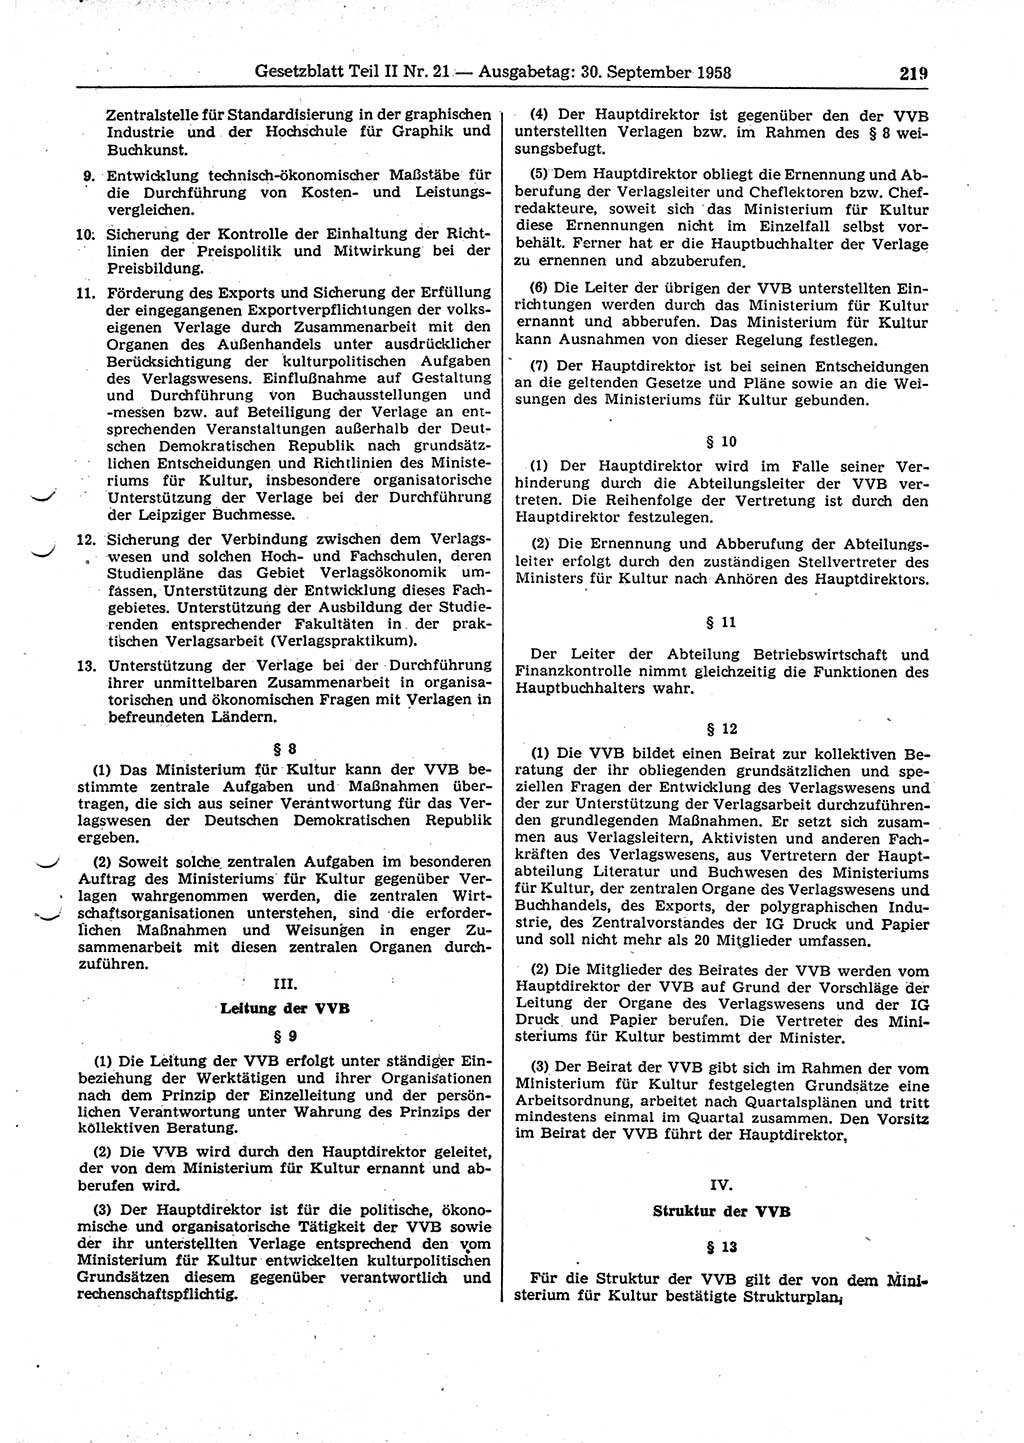 Gesetzblatt (GBl.) der Deutschen Demokratischen Republik (DDR) Teil ⅠⅠ 1958, Seite 219 (GBl. DDR ⅠⅠ 1958, S. 219)